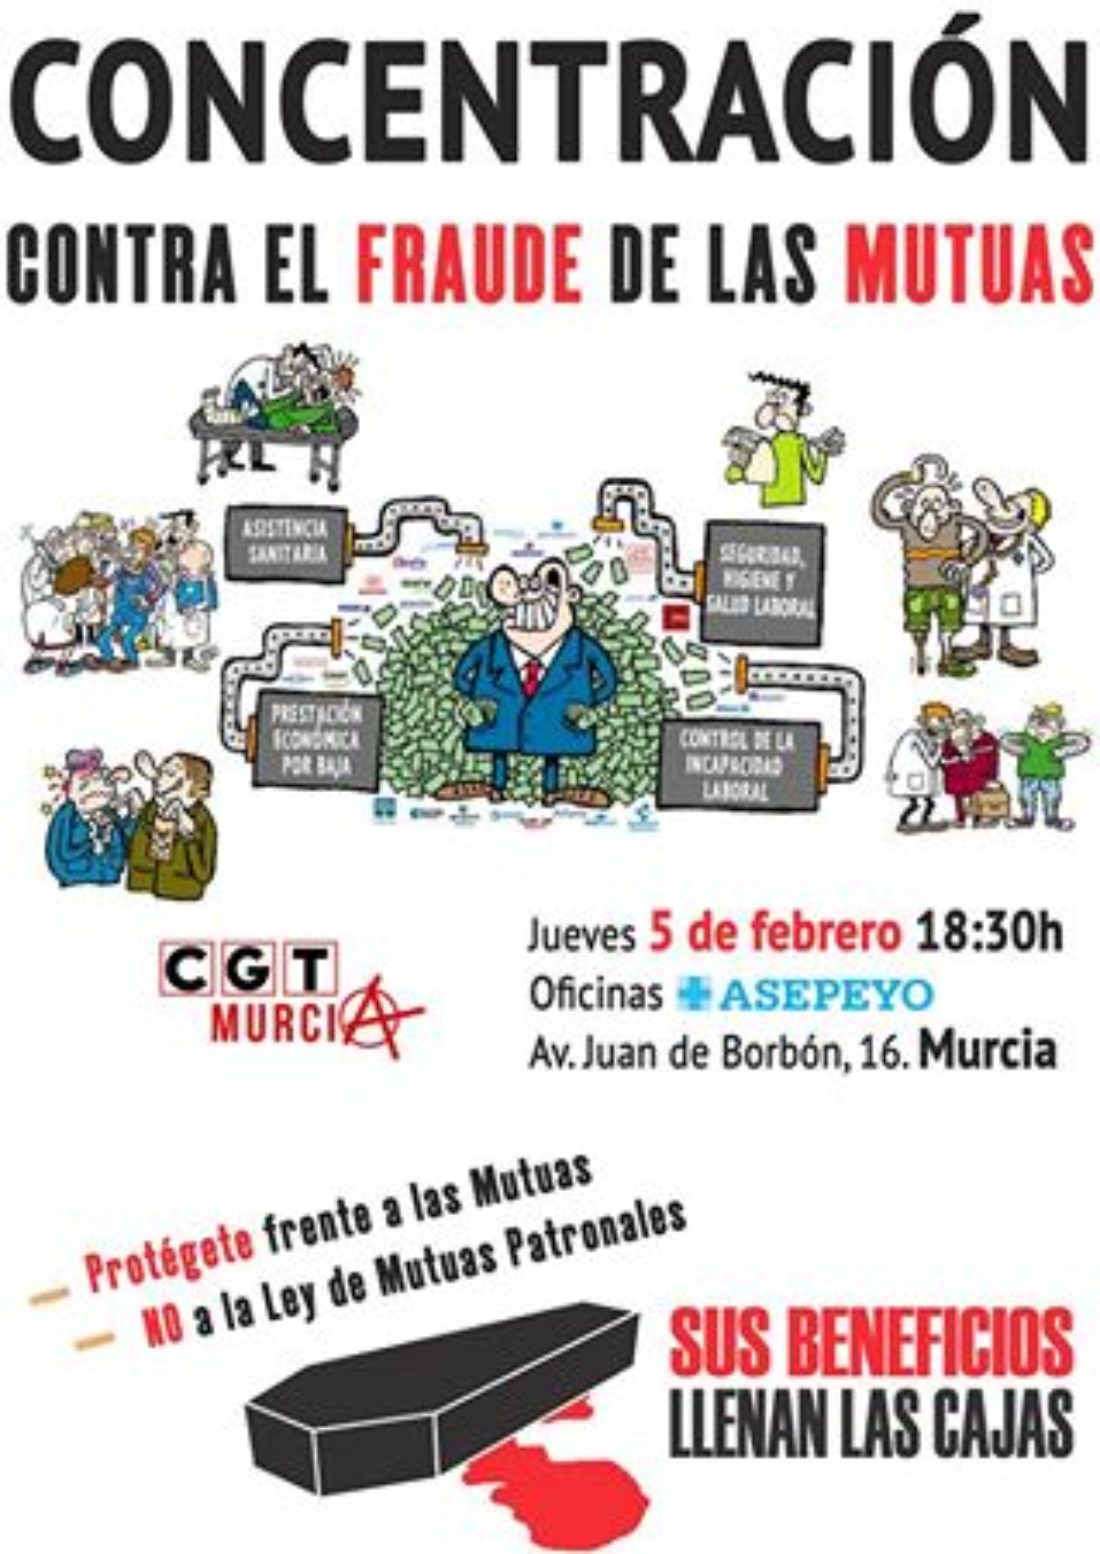 5-F: Concentración contra el fraude de las Mutuas en Murcia